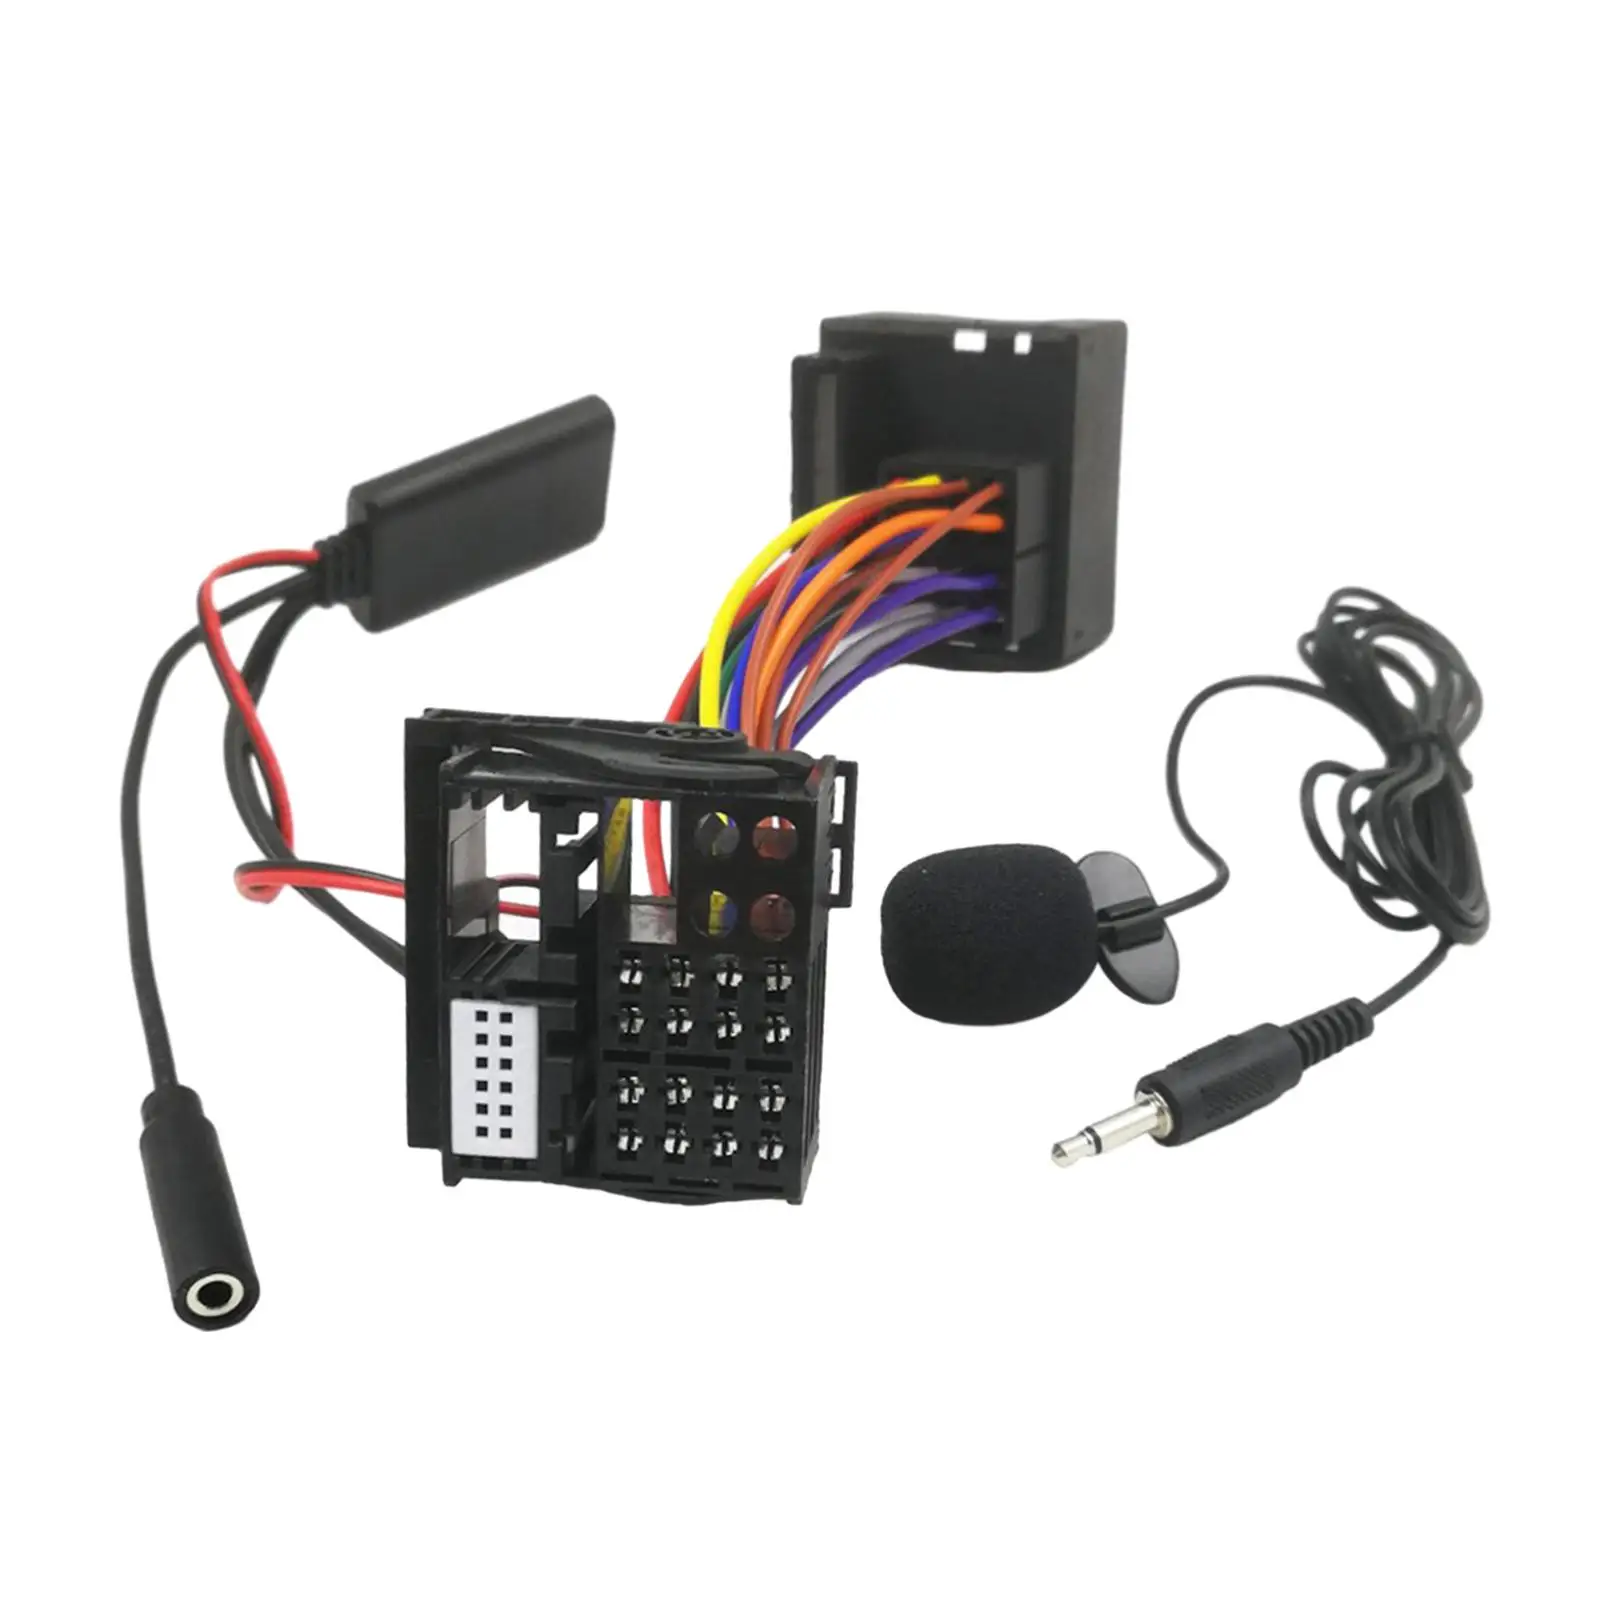 

AUX-кабель Bluetooth адаптер 5,0 автомобильный радиоприемник стерео динамик AUX вход музыкальный приемник для W169 W203 аудио 20 30 50 Aps NTG R230